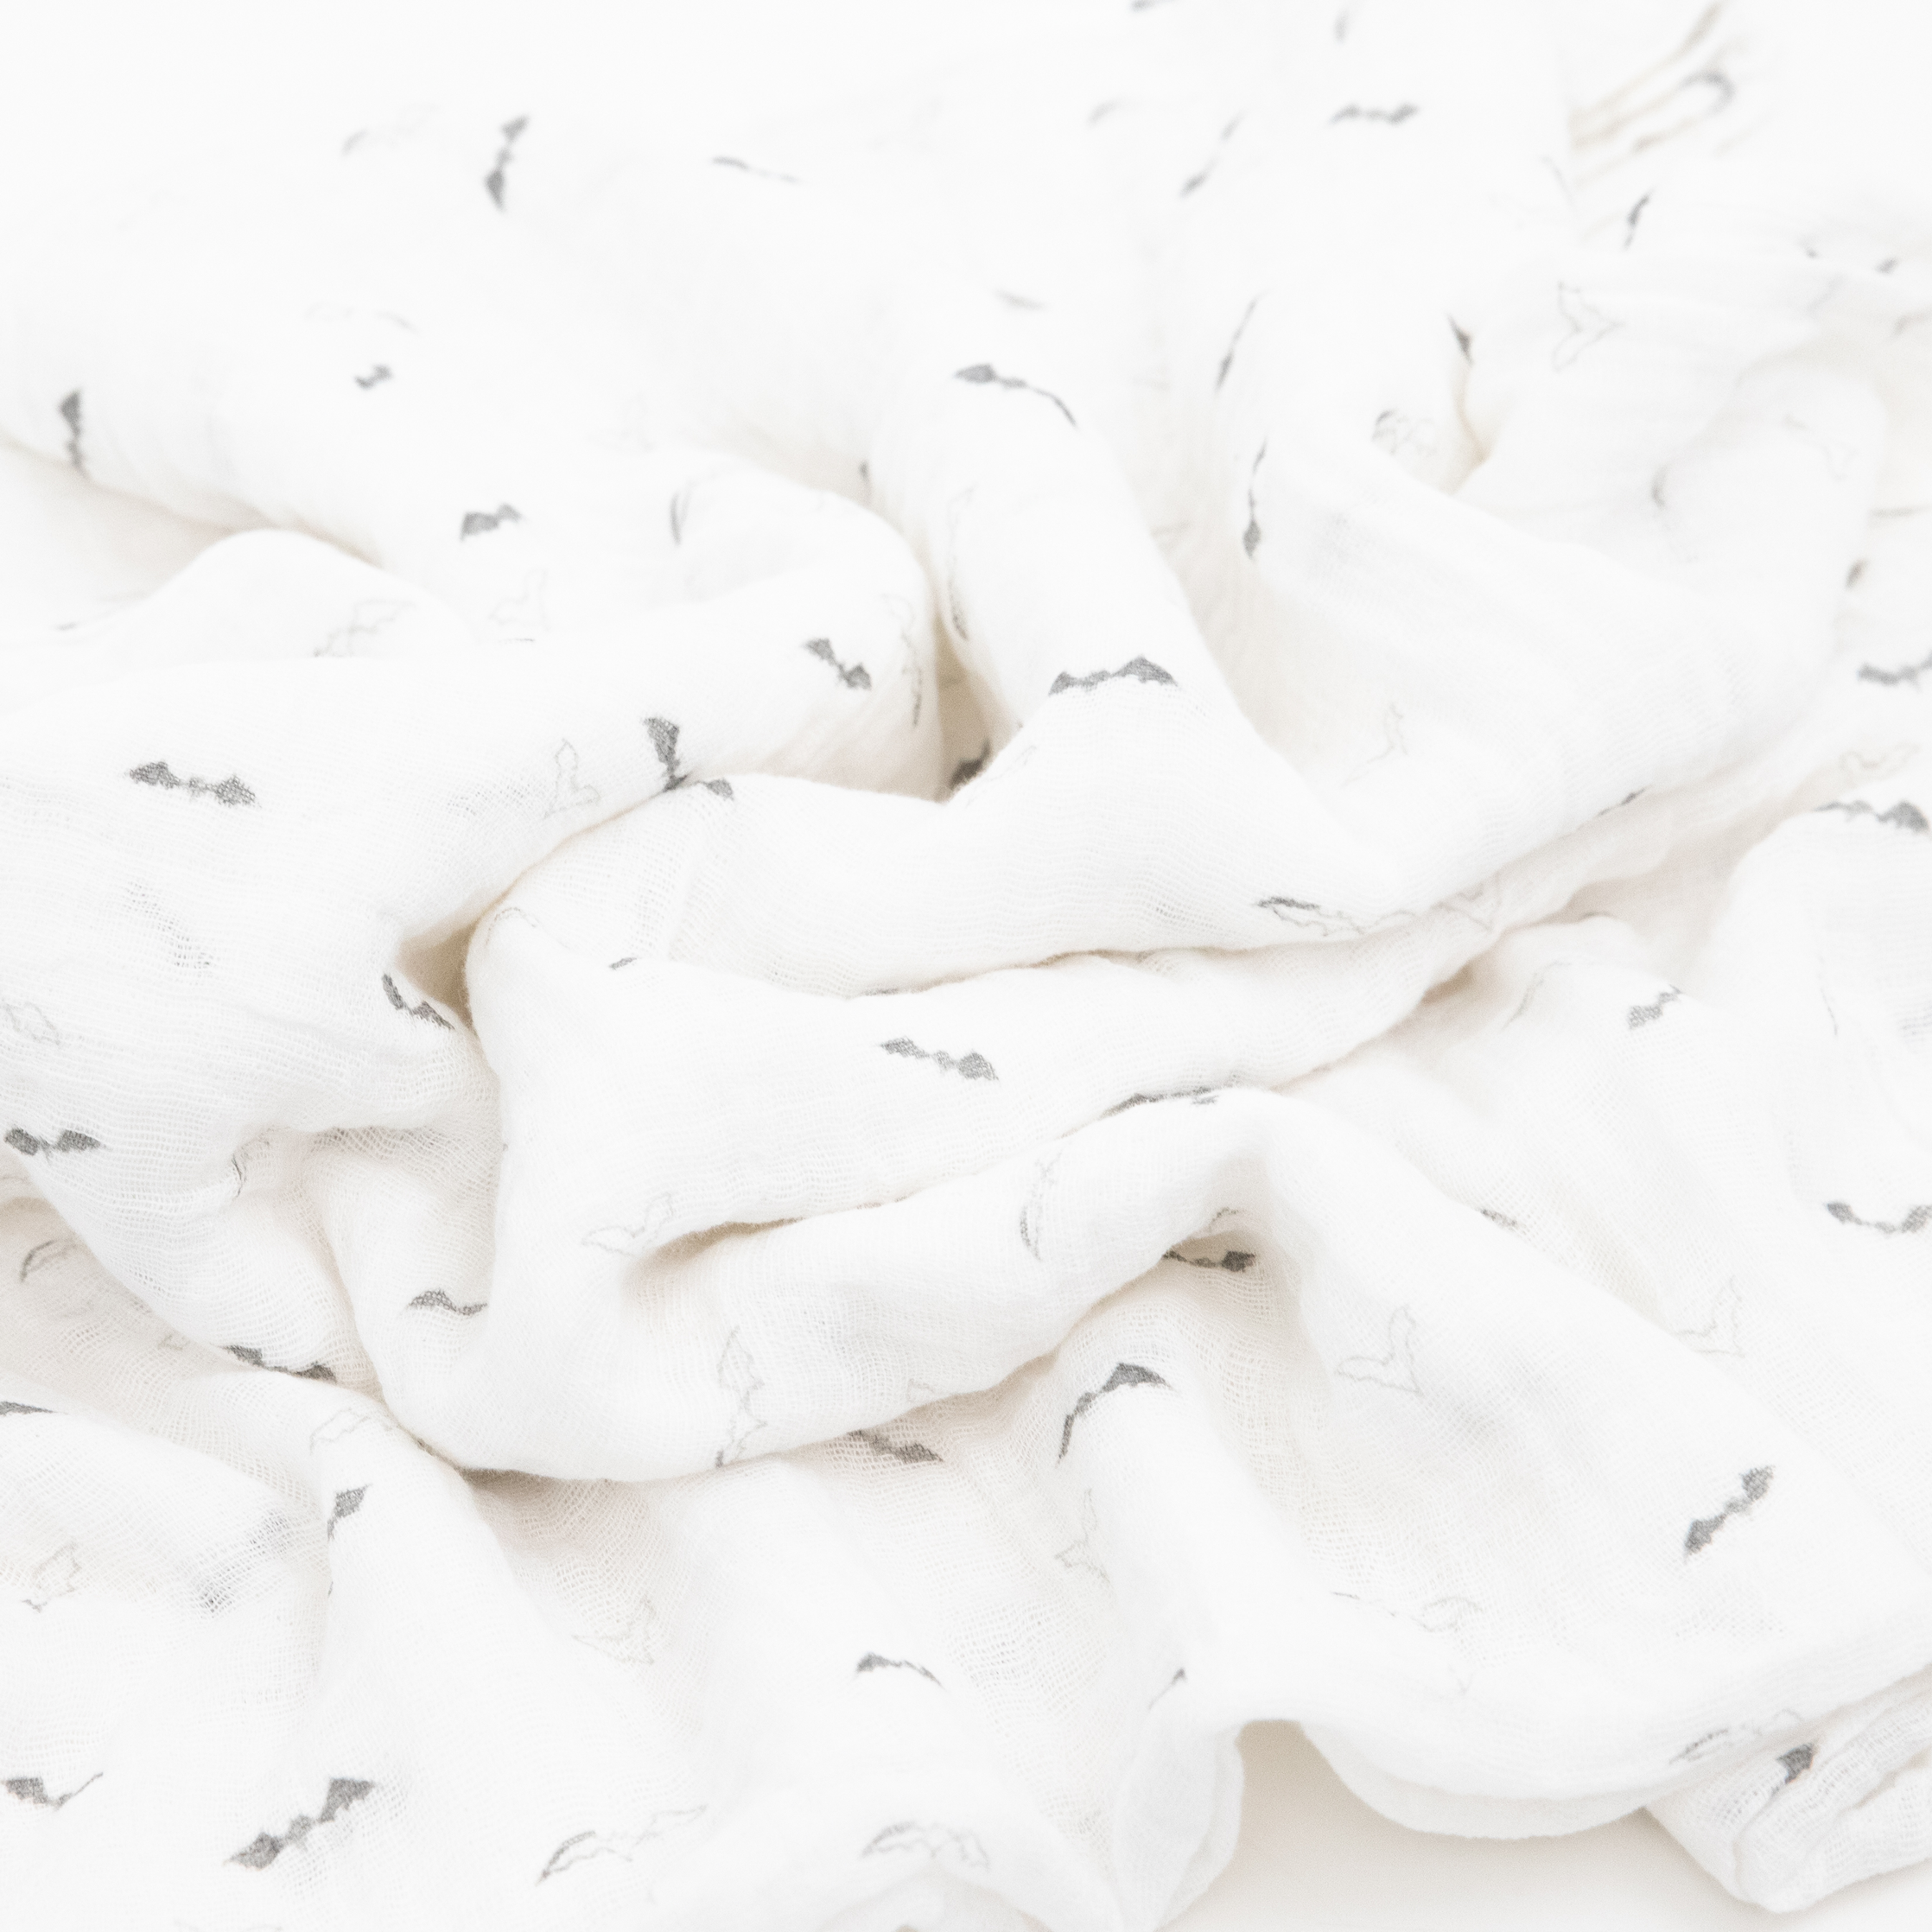 Cotton Muslin Swaddle Blanket - Bats